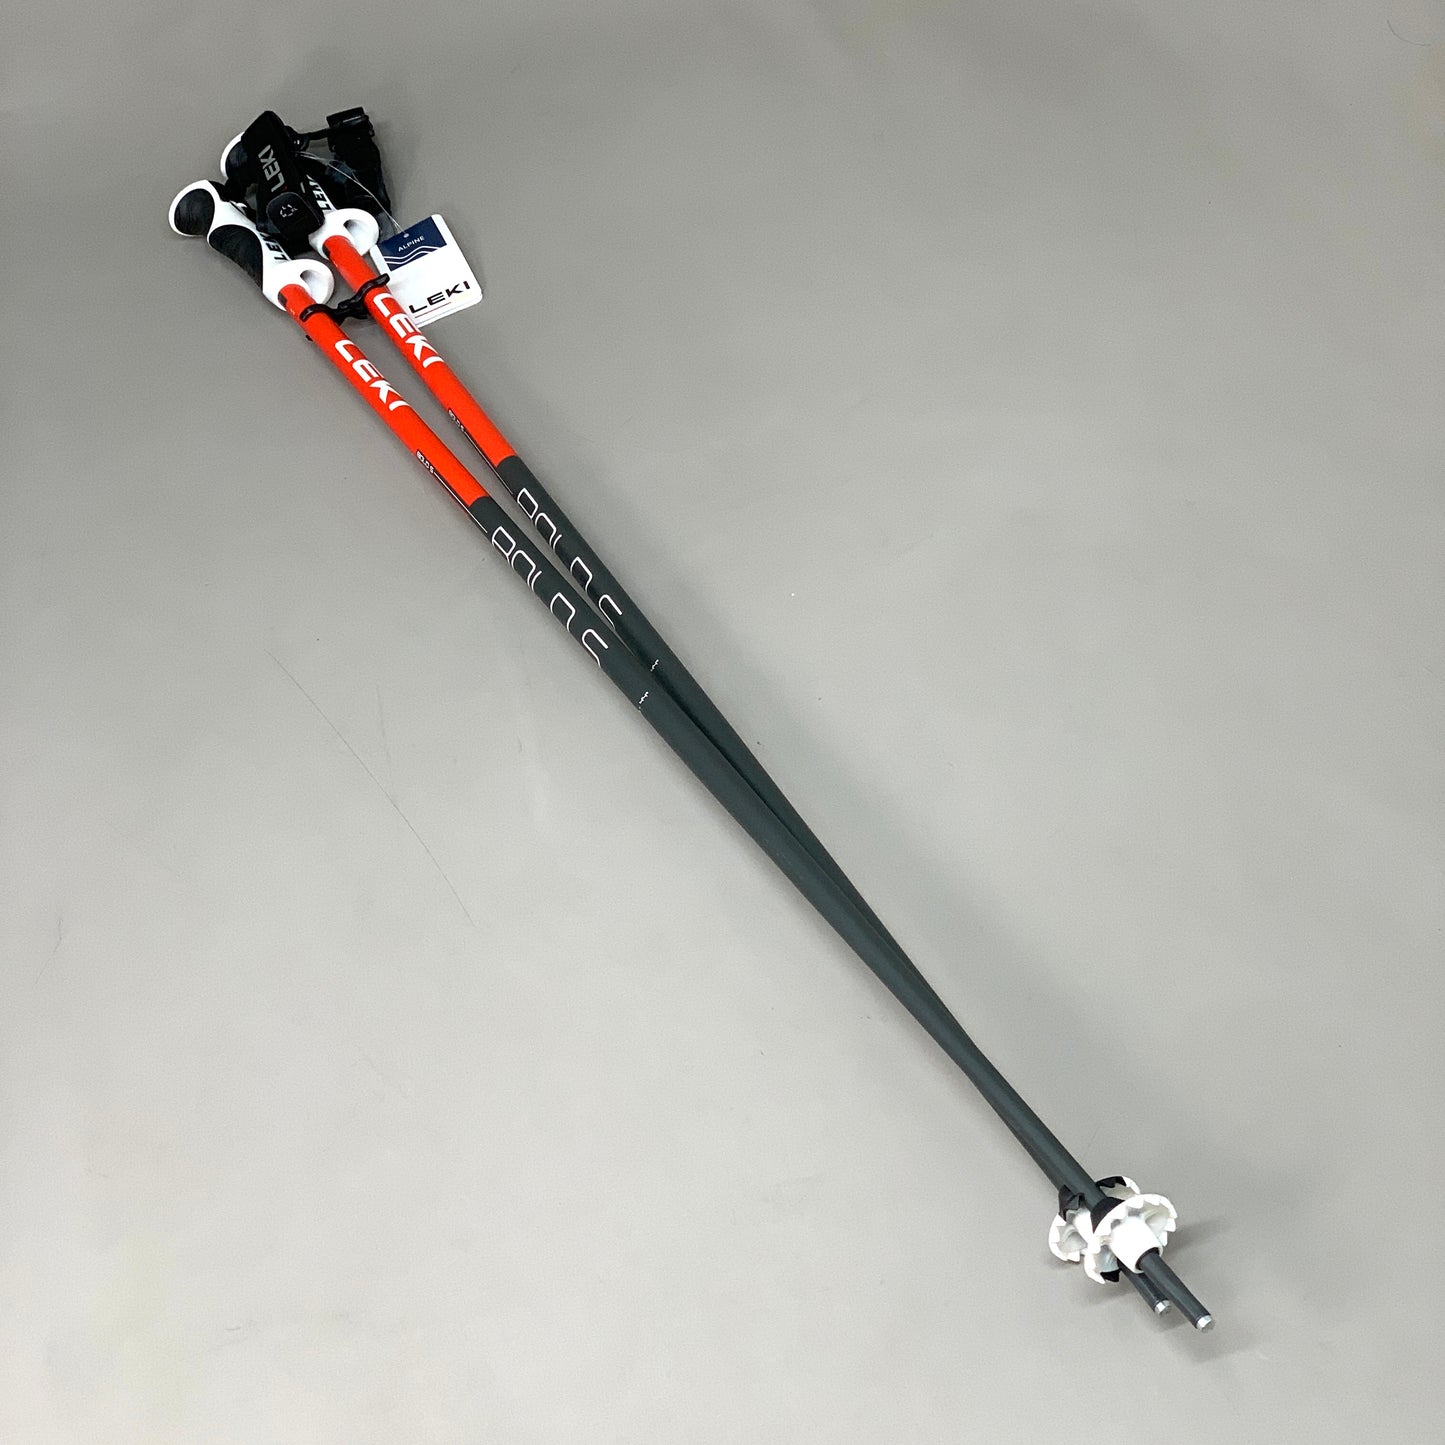 LEKI Ski Poles Bold S Aluminum Ice Tip 110cm / 44" Black & Red 65366431110